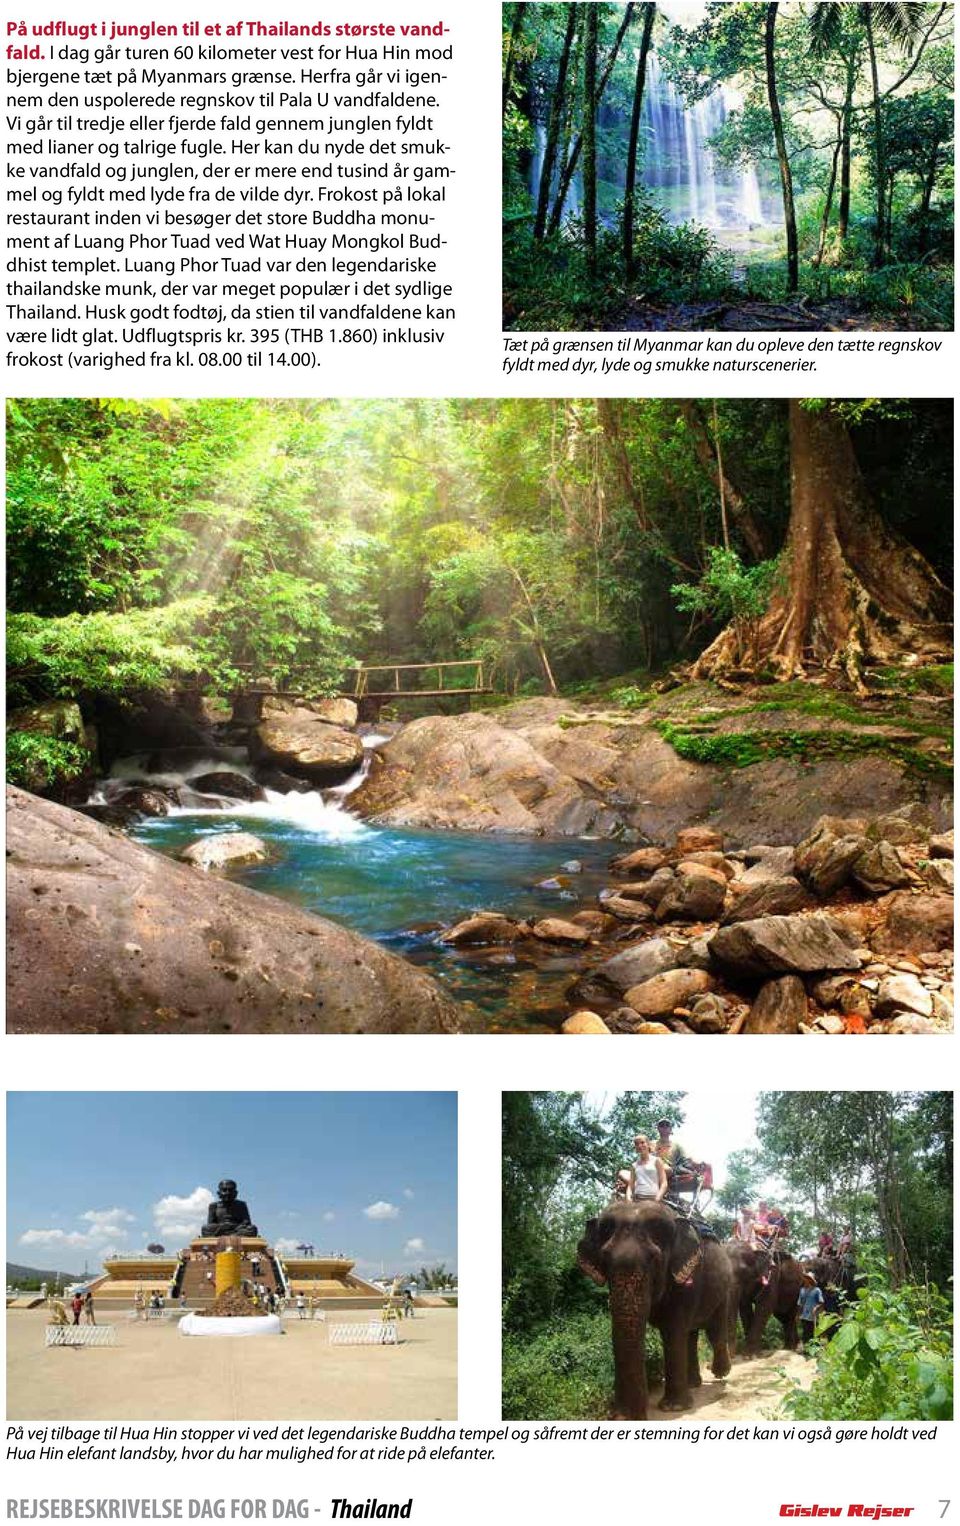 Her kan du nyde det smukke vandfald og junglen, der er mere end tusind år gammel og fyldt med lyde fra de vilde dyr.